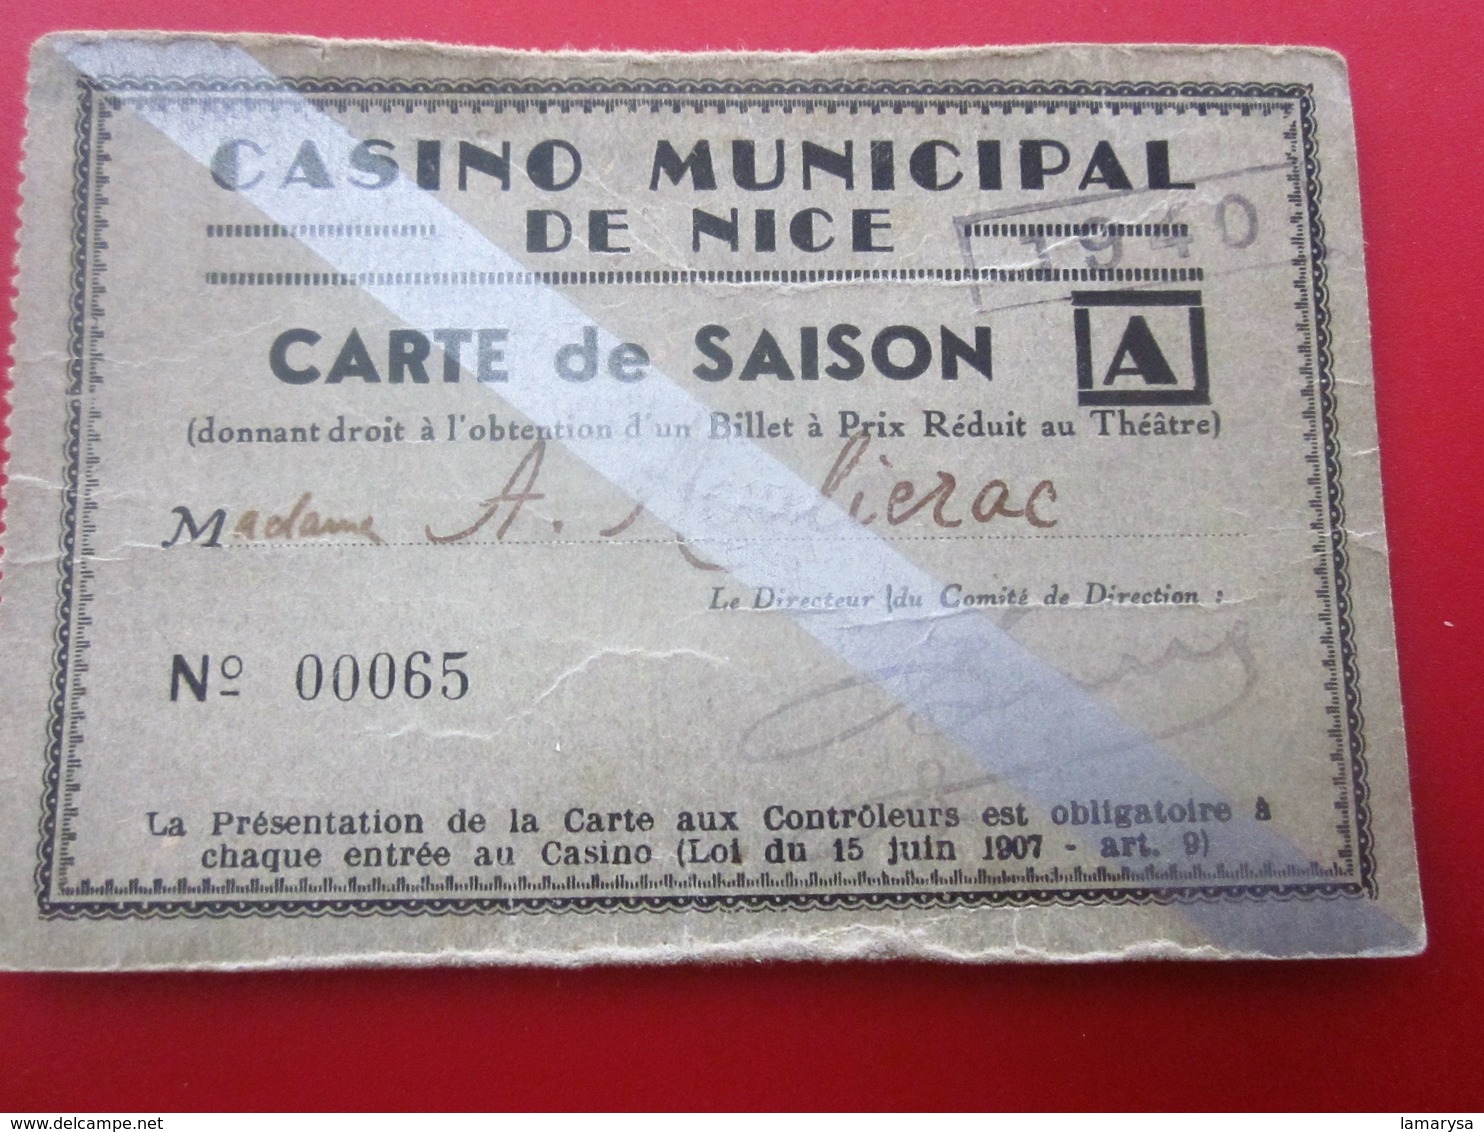 1940 WW2 CASINO MUNICIPAL NICE CARTE SAISON PRIX RÉDUIT THÉÂTRE Ticket Billet Entrée Entry Entrance-Biglietto D'ingresso - Biglietti D'ingresso